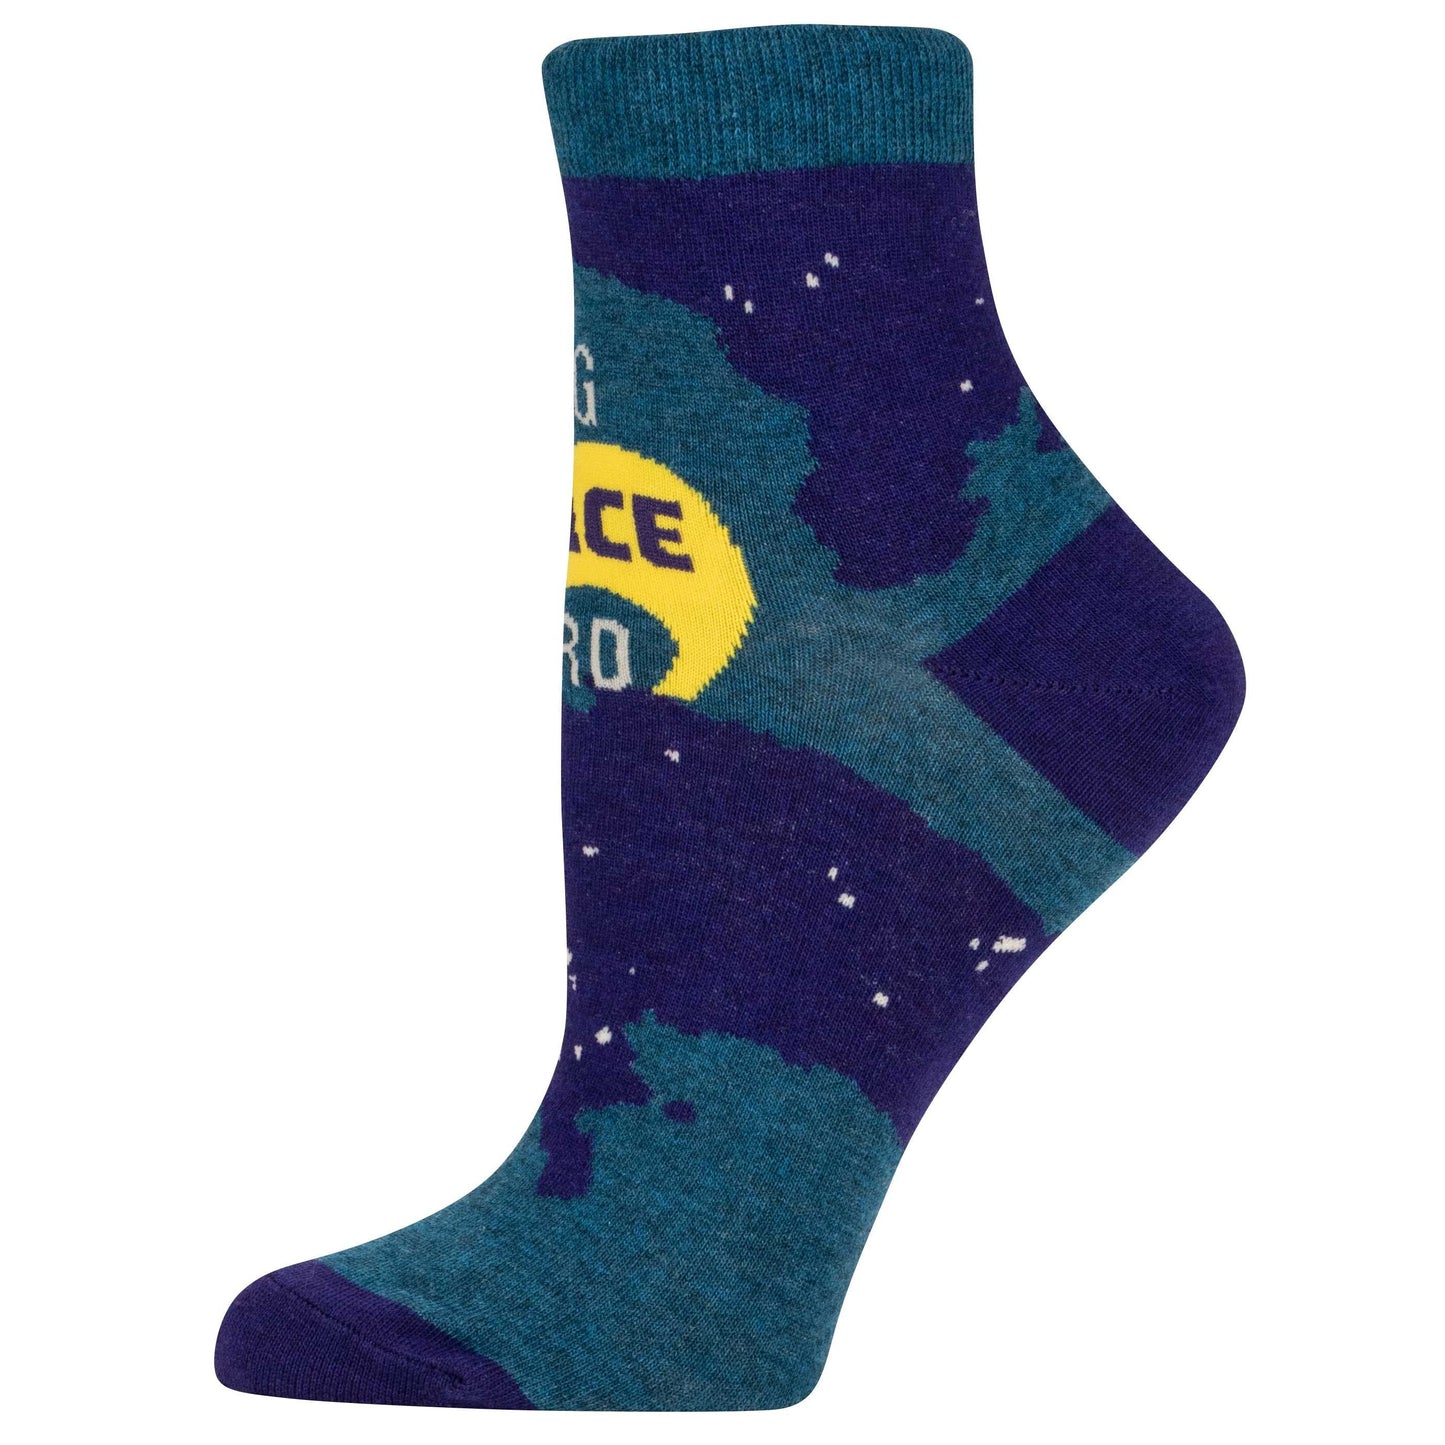 Big Space Nerd Women's Ankle Socks